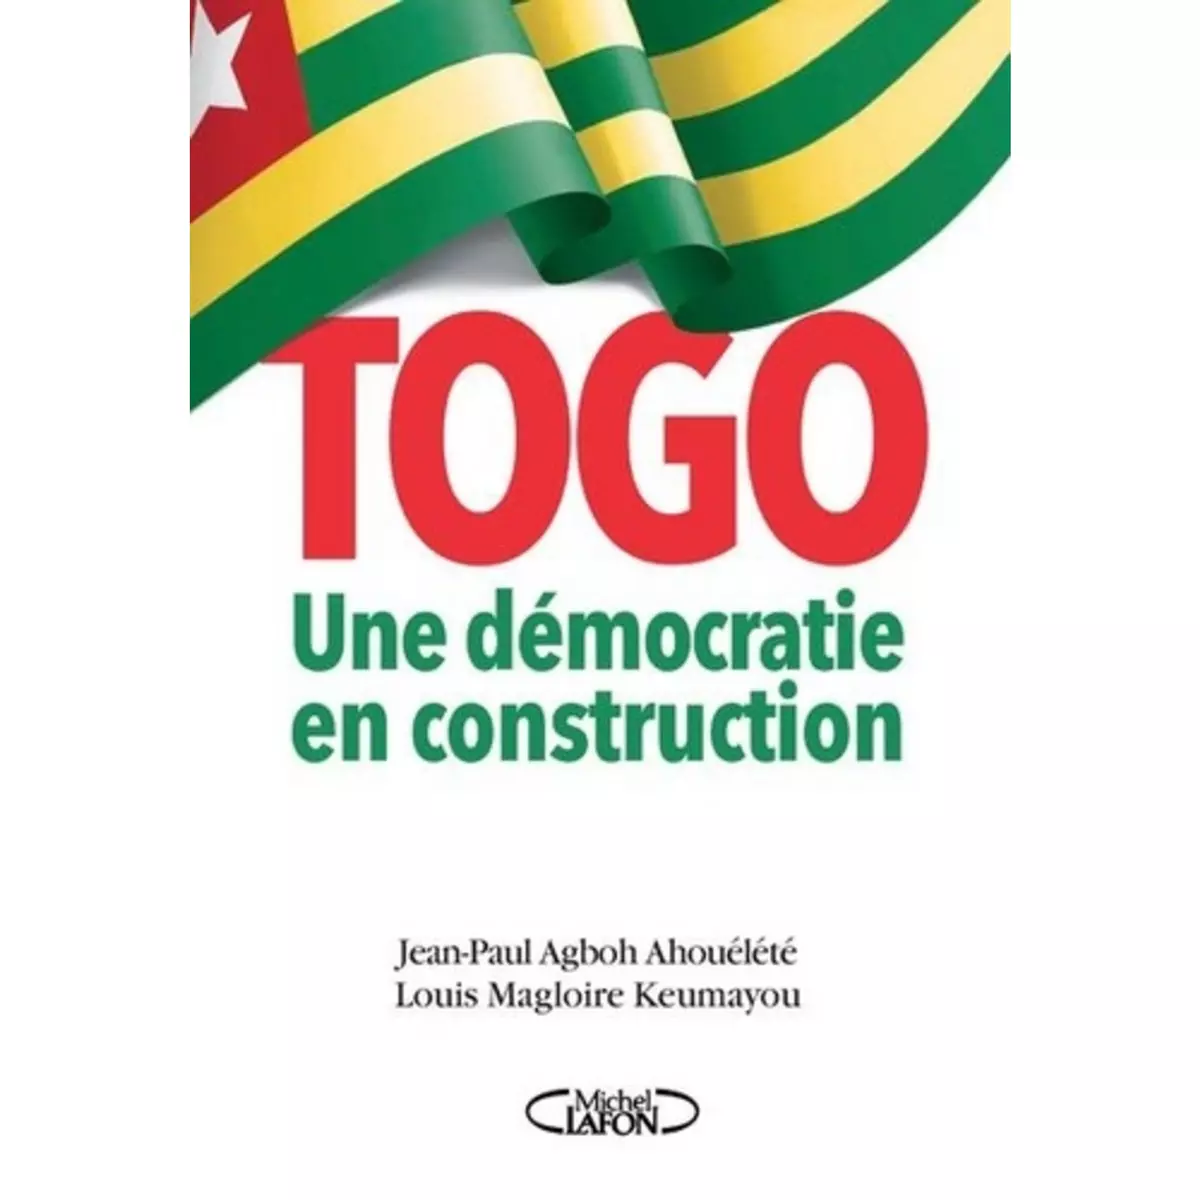  TOGO : UNE DEMOCRATIE EN CONSTRUCTION, Agboh Ahouélété Jean-Paul